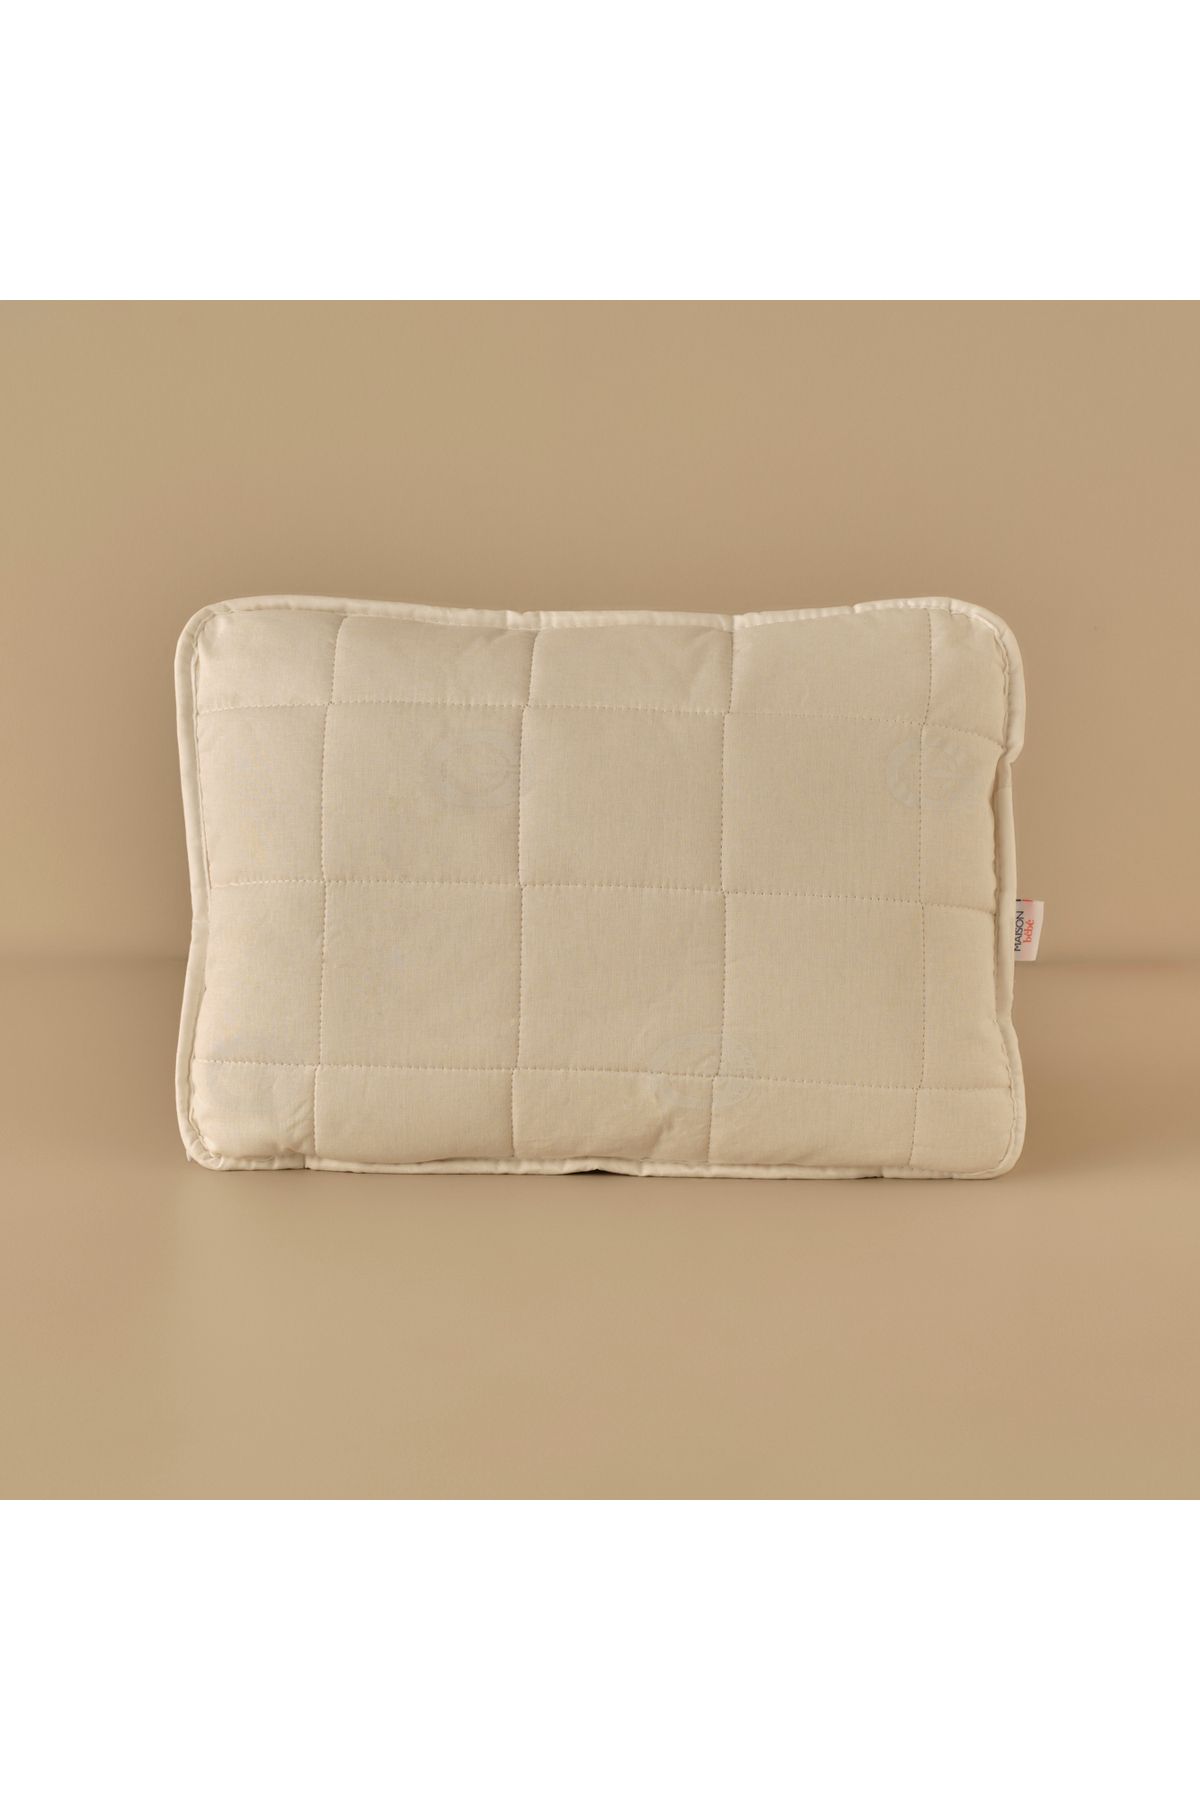 Bella Maison Bebek %100 Pamuk Yastık Beyaz (55x45 cm)